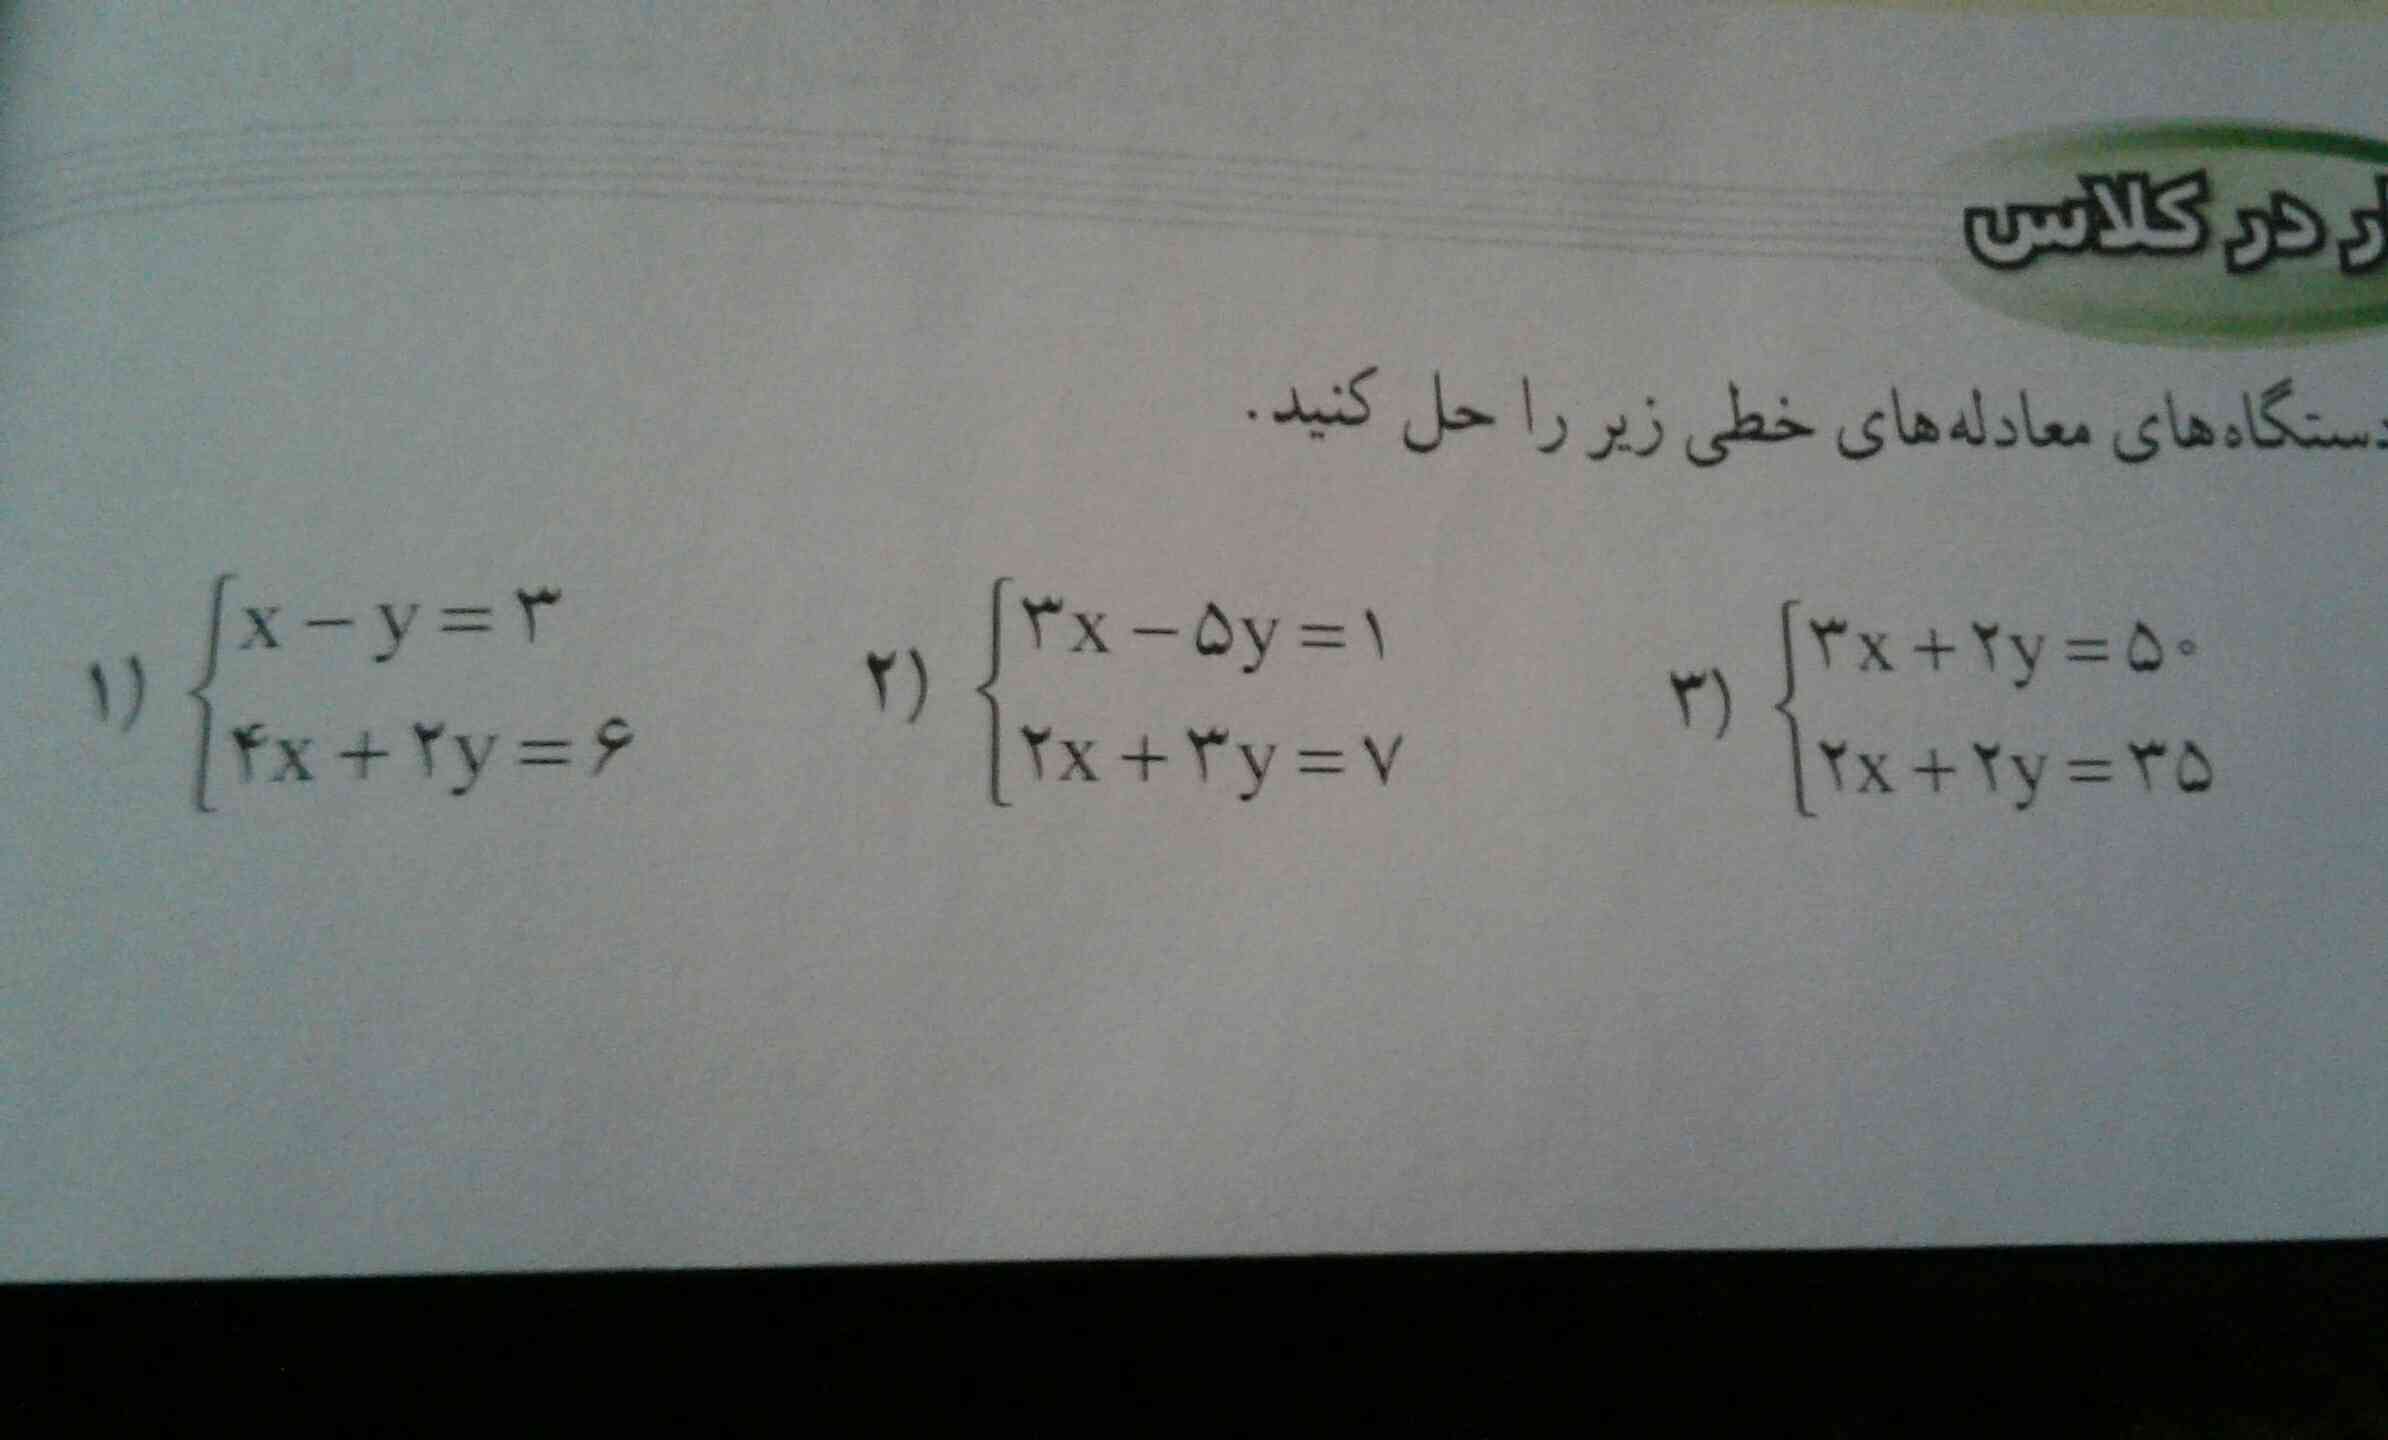 جواب این معادلات رو بهم میگید